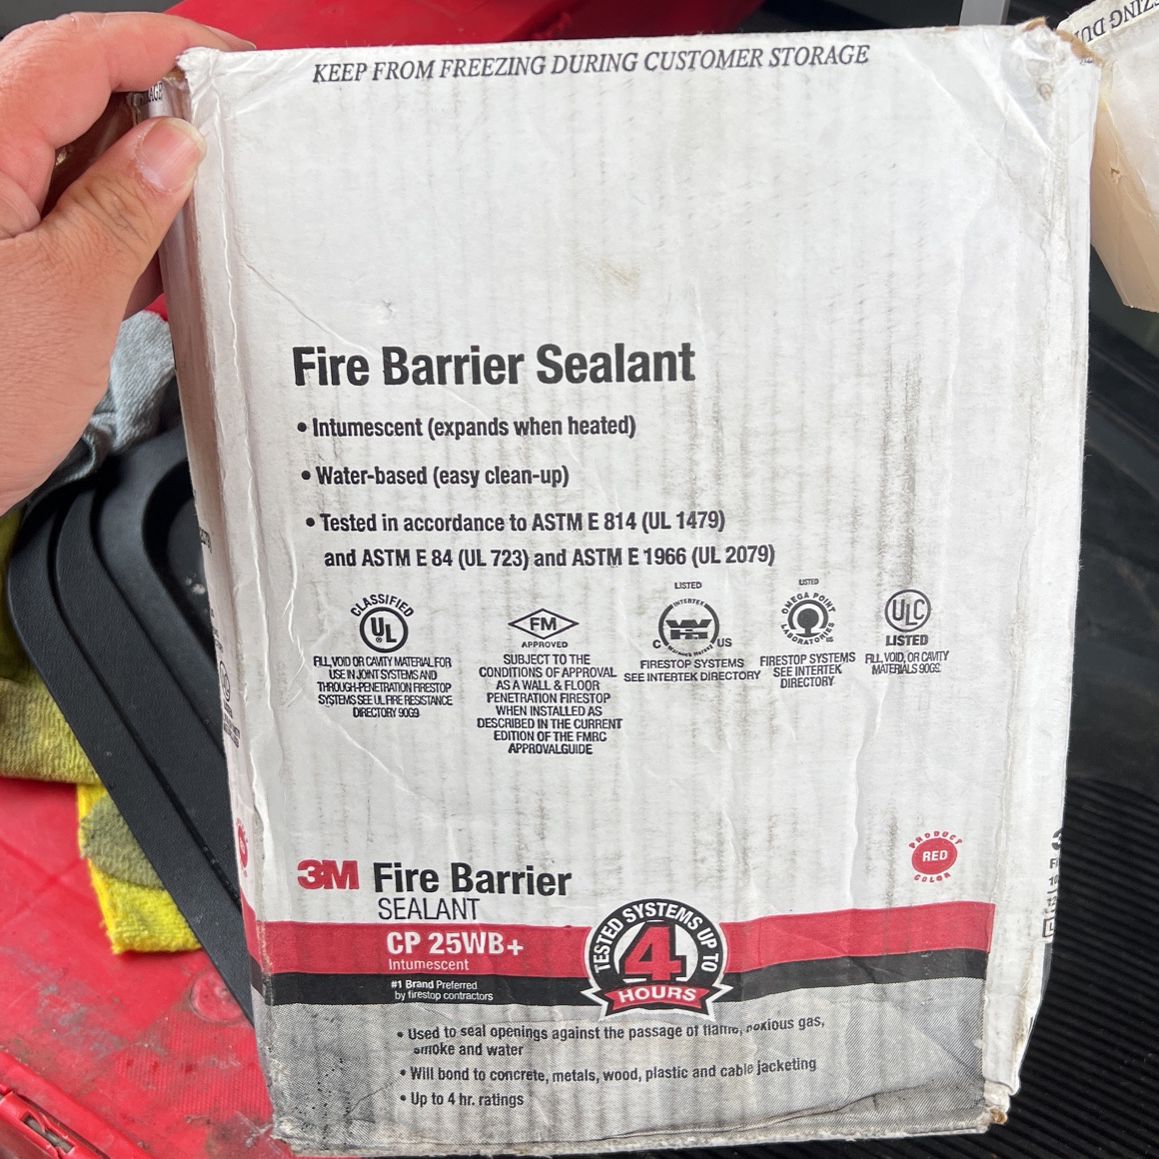 3M Fire Barrier Sealant